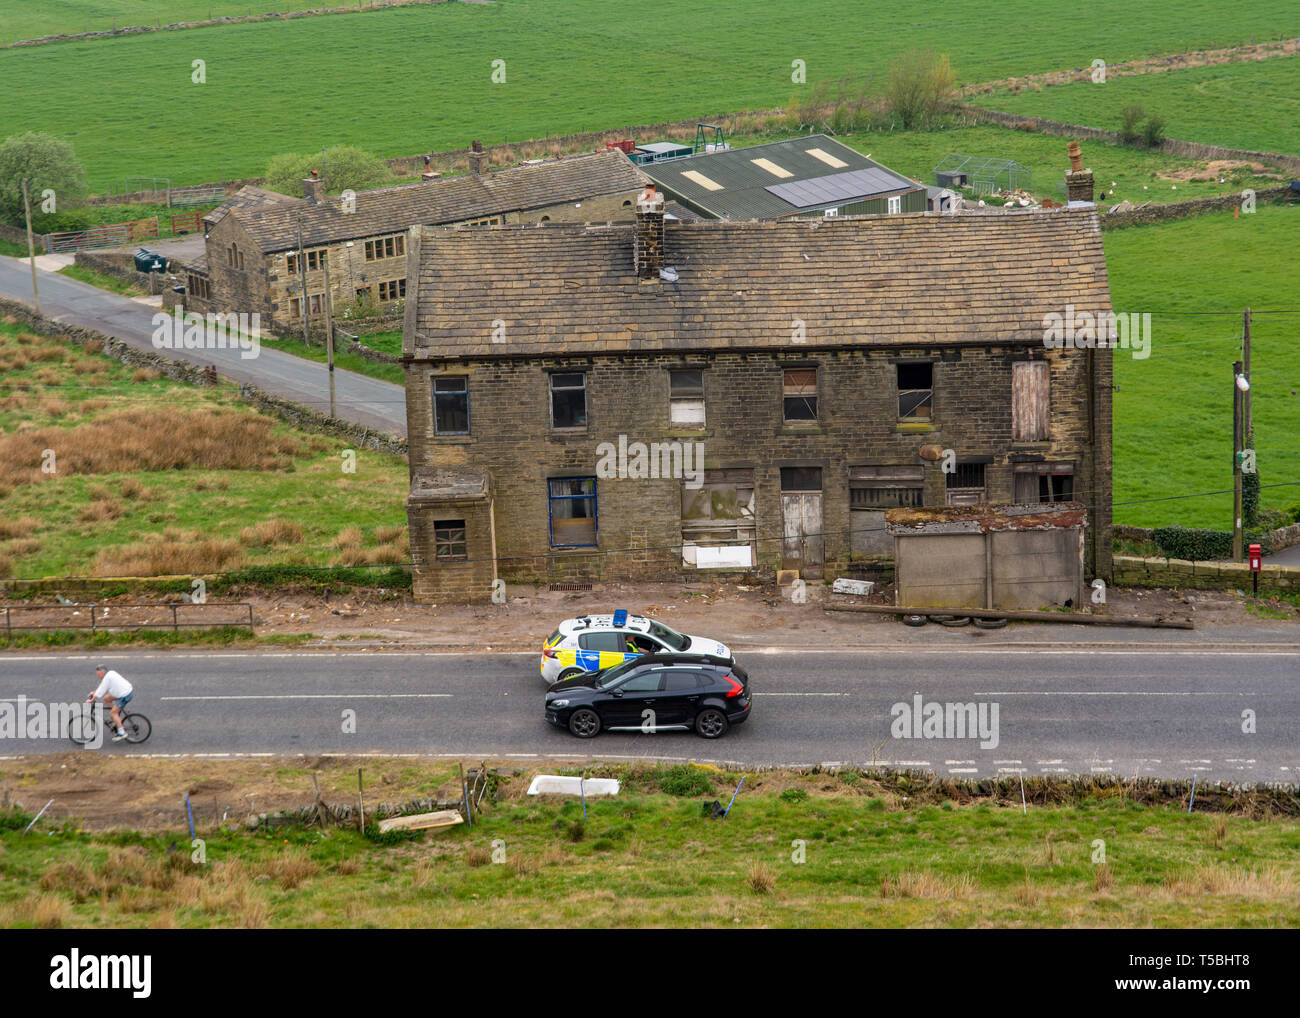 Marsden, nello Yorkshire, 23 Aprile 19. Una macchina della polizia arresta un civile dalla guida passato la strada chiusa segno, come un ciclista passa verso il selvaggio degli incendi. Foto Stock